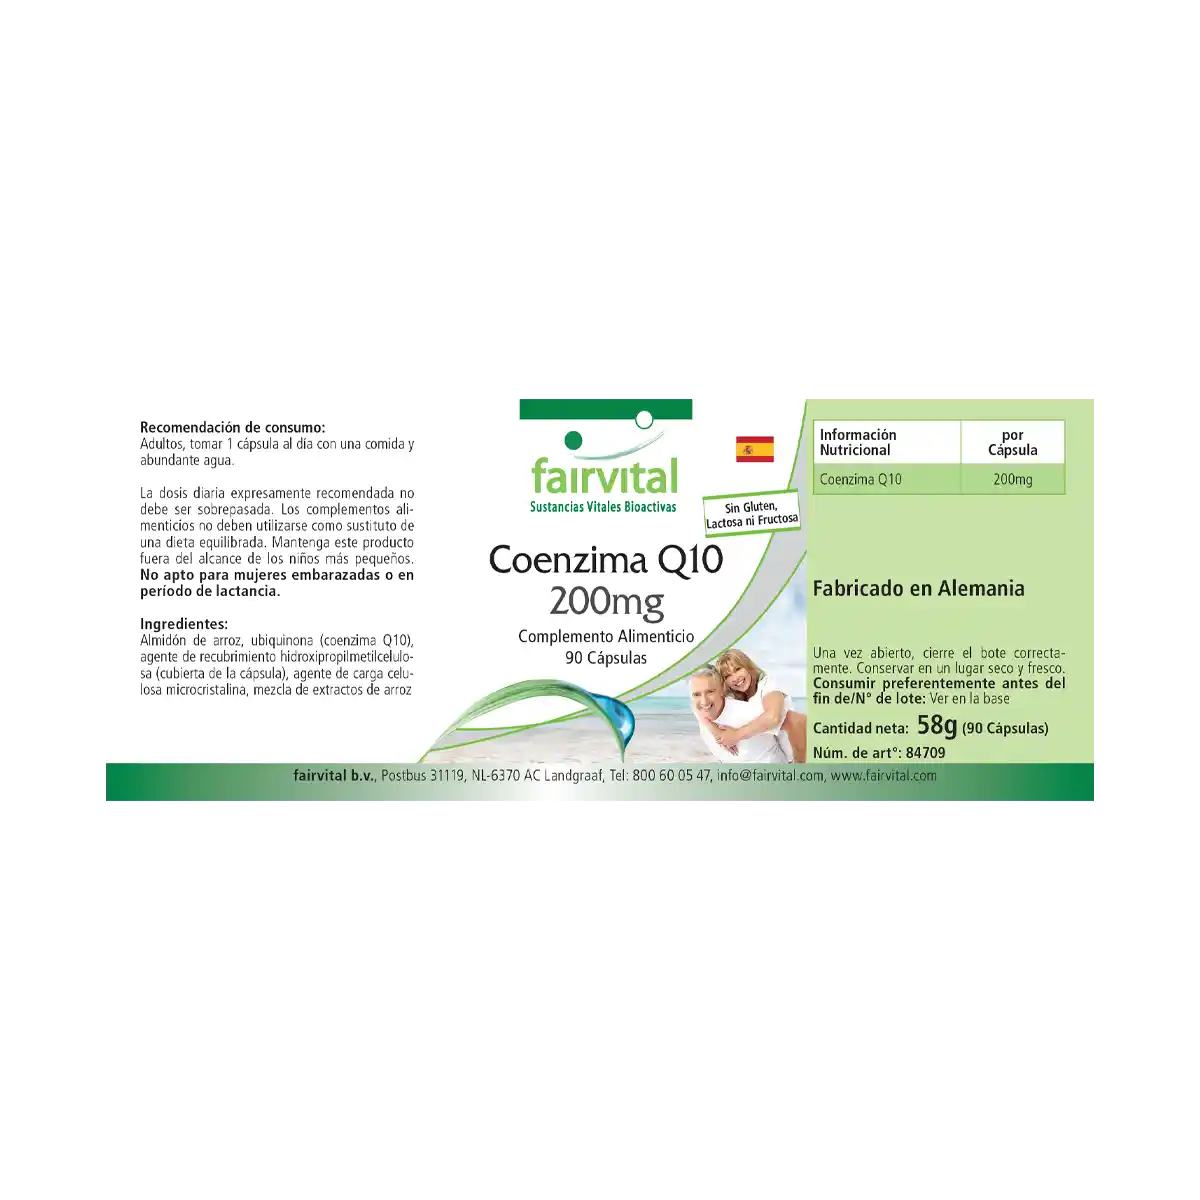 Co-enzym Q10 200mg - 90 capsules